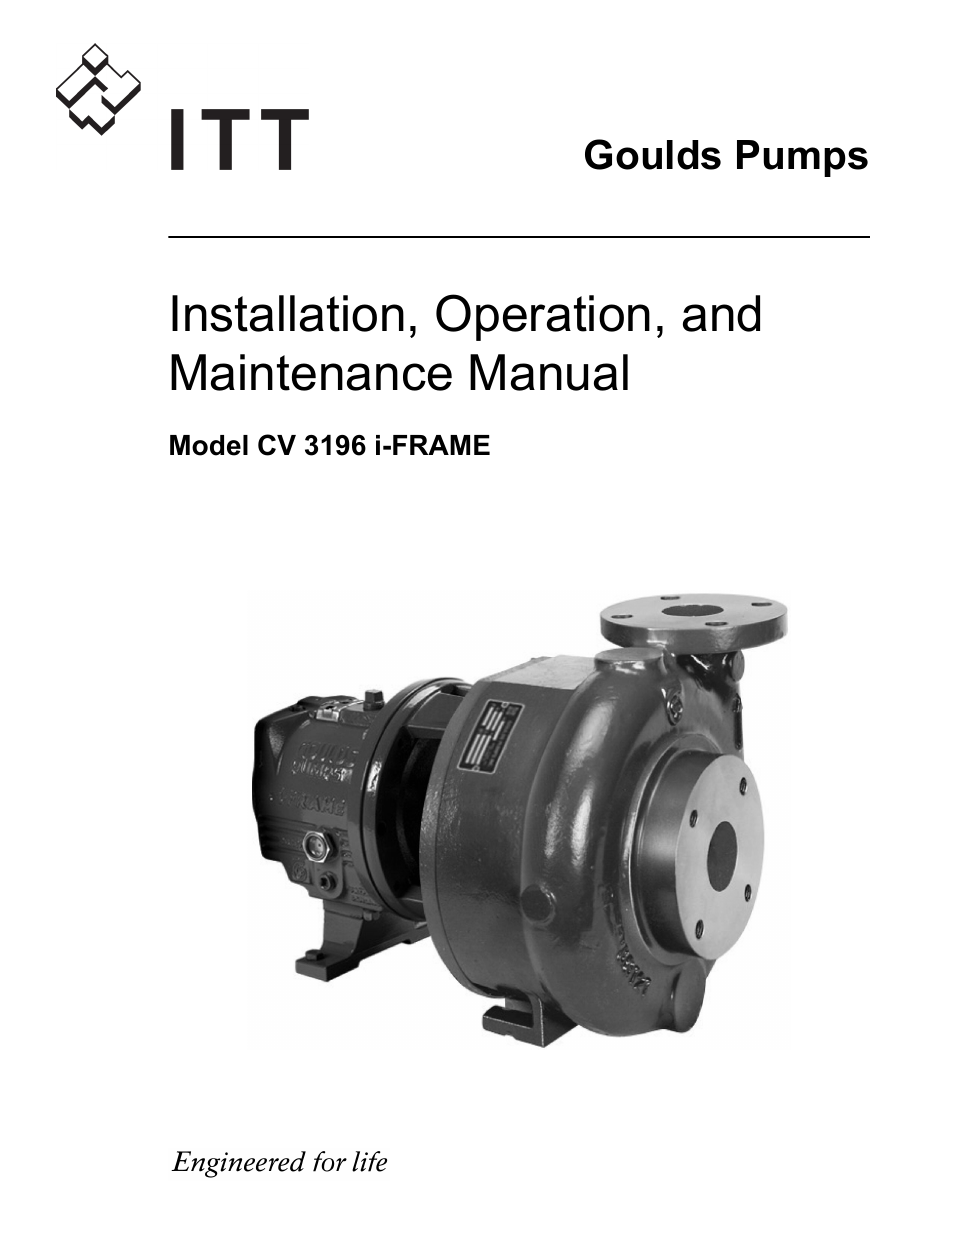 Goulds Pumps CV 3196 i-FRAME - IOM User Manual | 152 pages